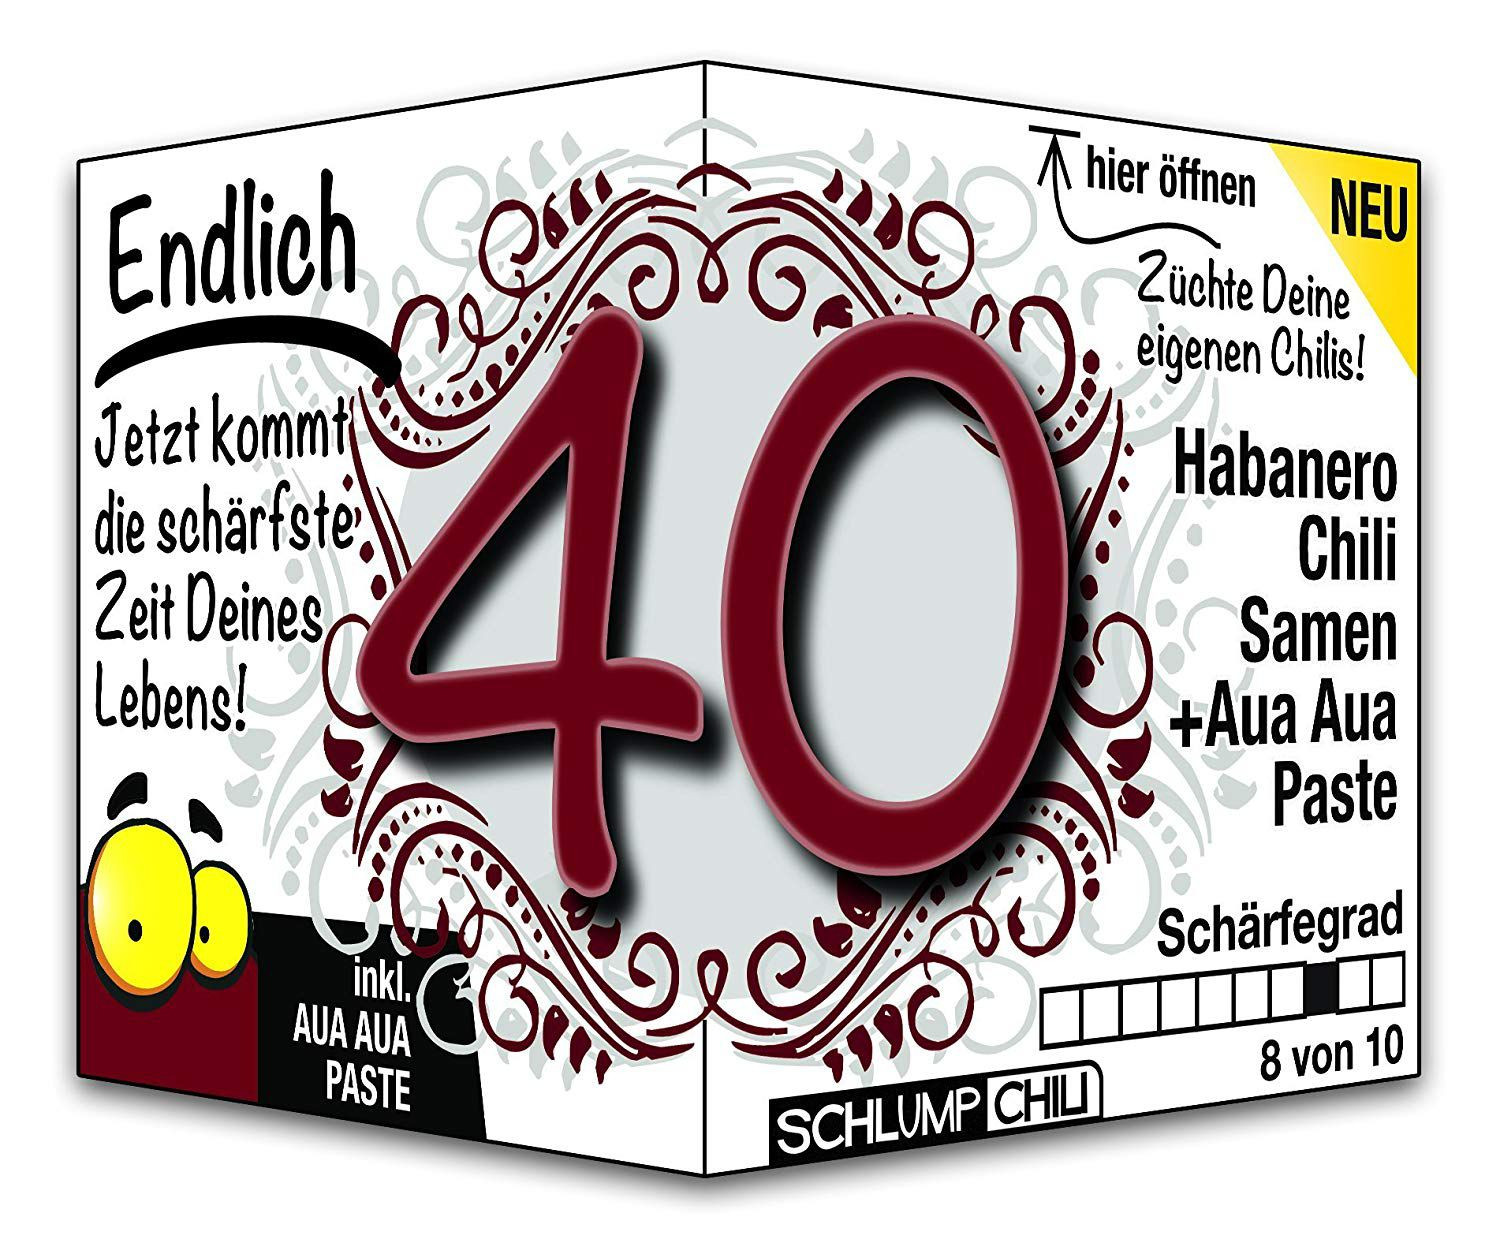 Geburtstagssprüche Zum 40. Geburtstag
 Bilder Geburtstag 40 Jahrelustige Bilder Zum 40